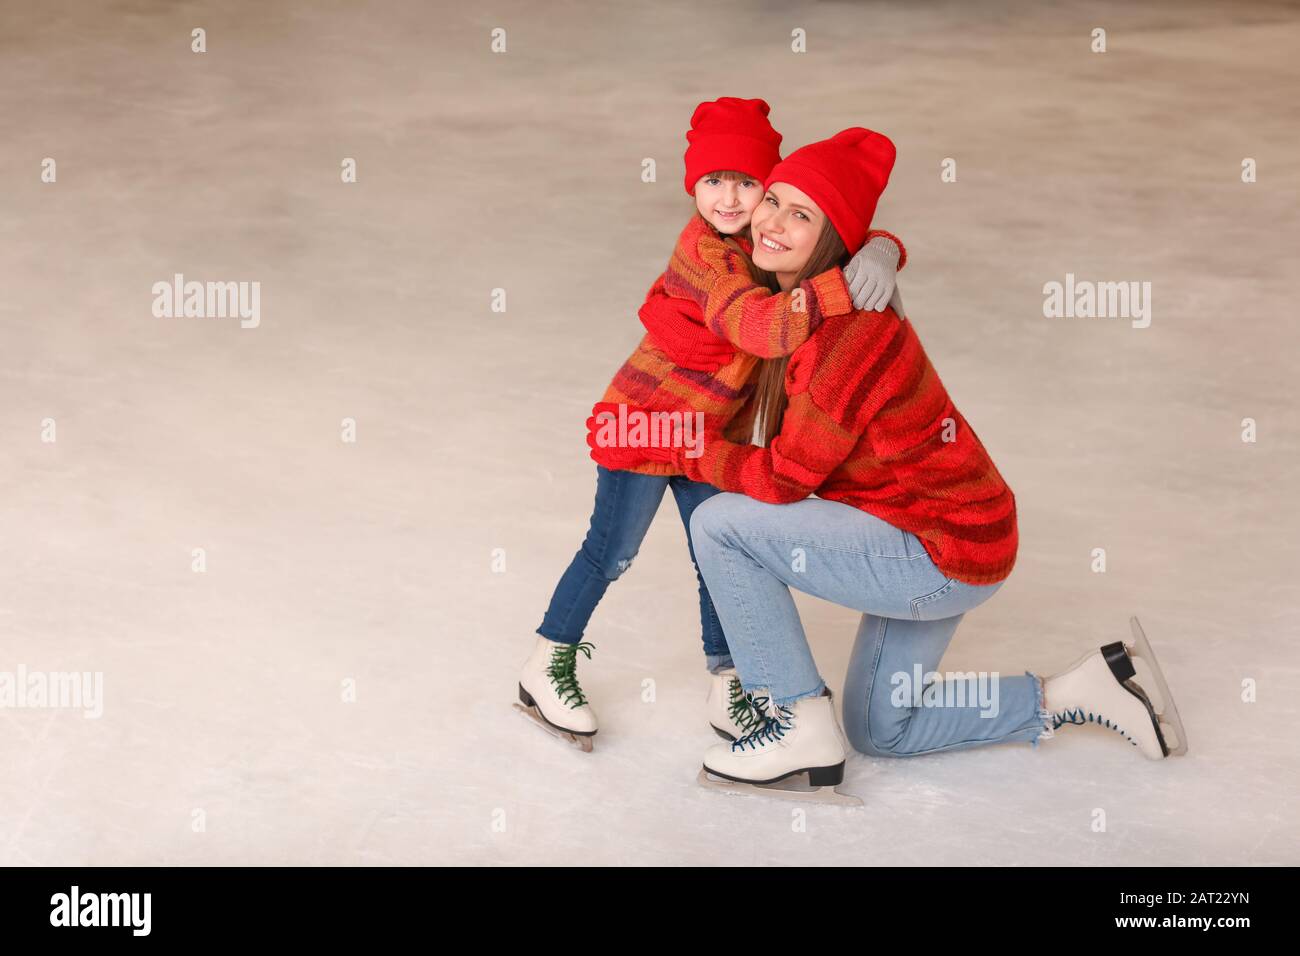 Giovane madre con piccola figlia sulla pista di pattinaggio Foto Stock